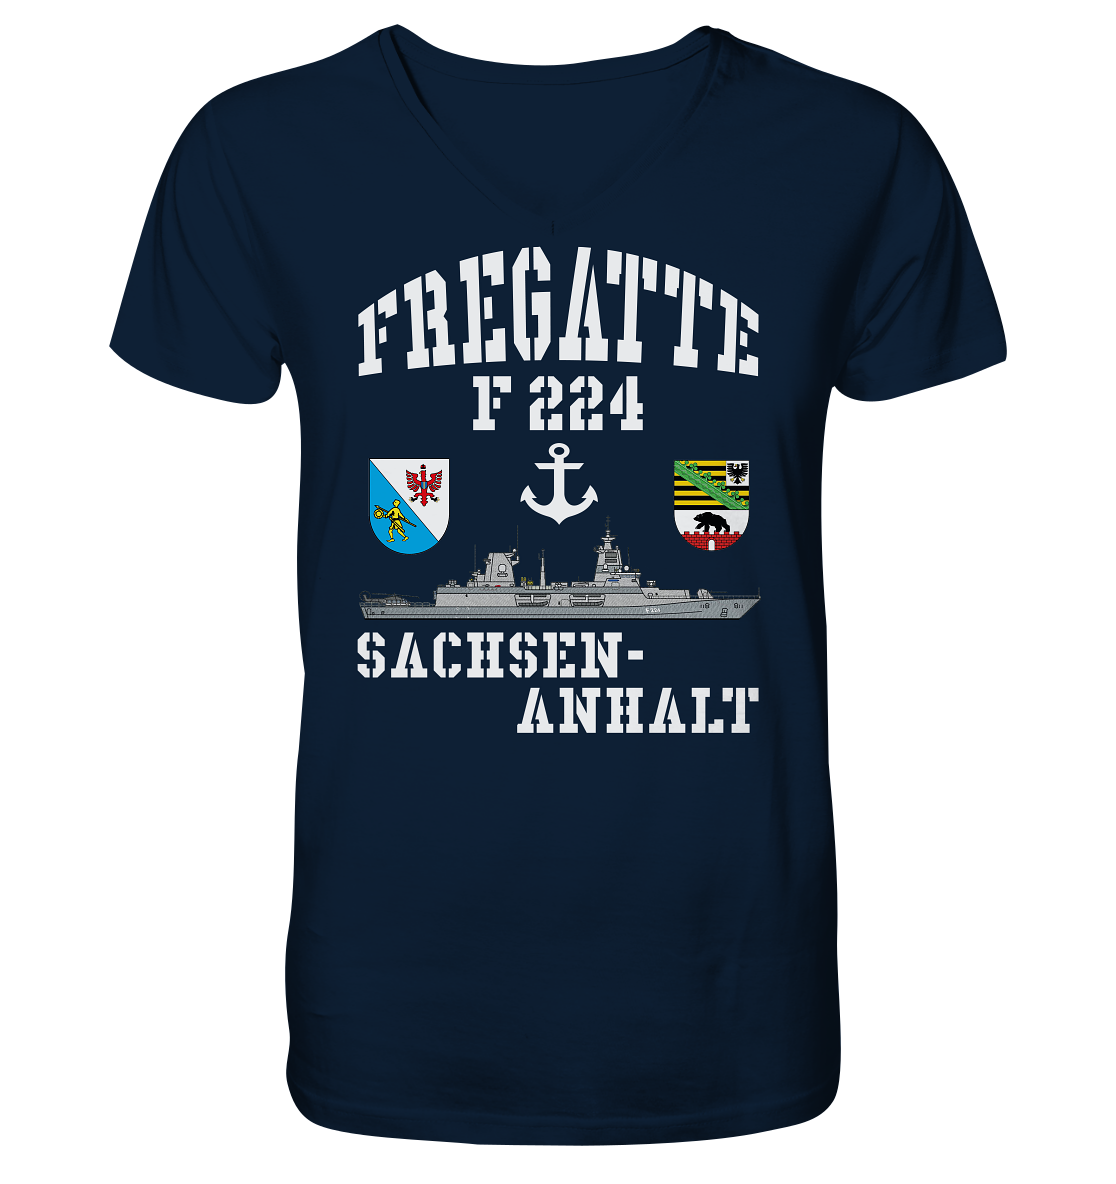 Fregatte F224 SACHSEN-ANHALT Anker - Mens Organic V-Neck Shirt